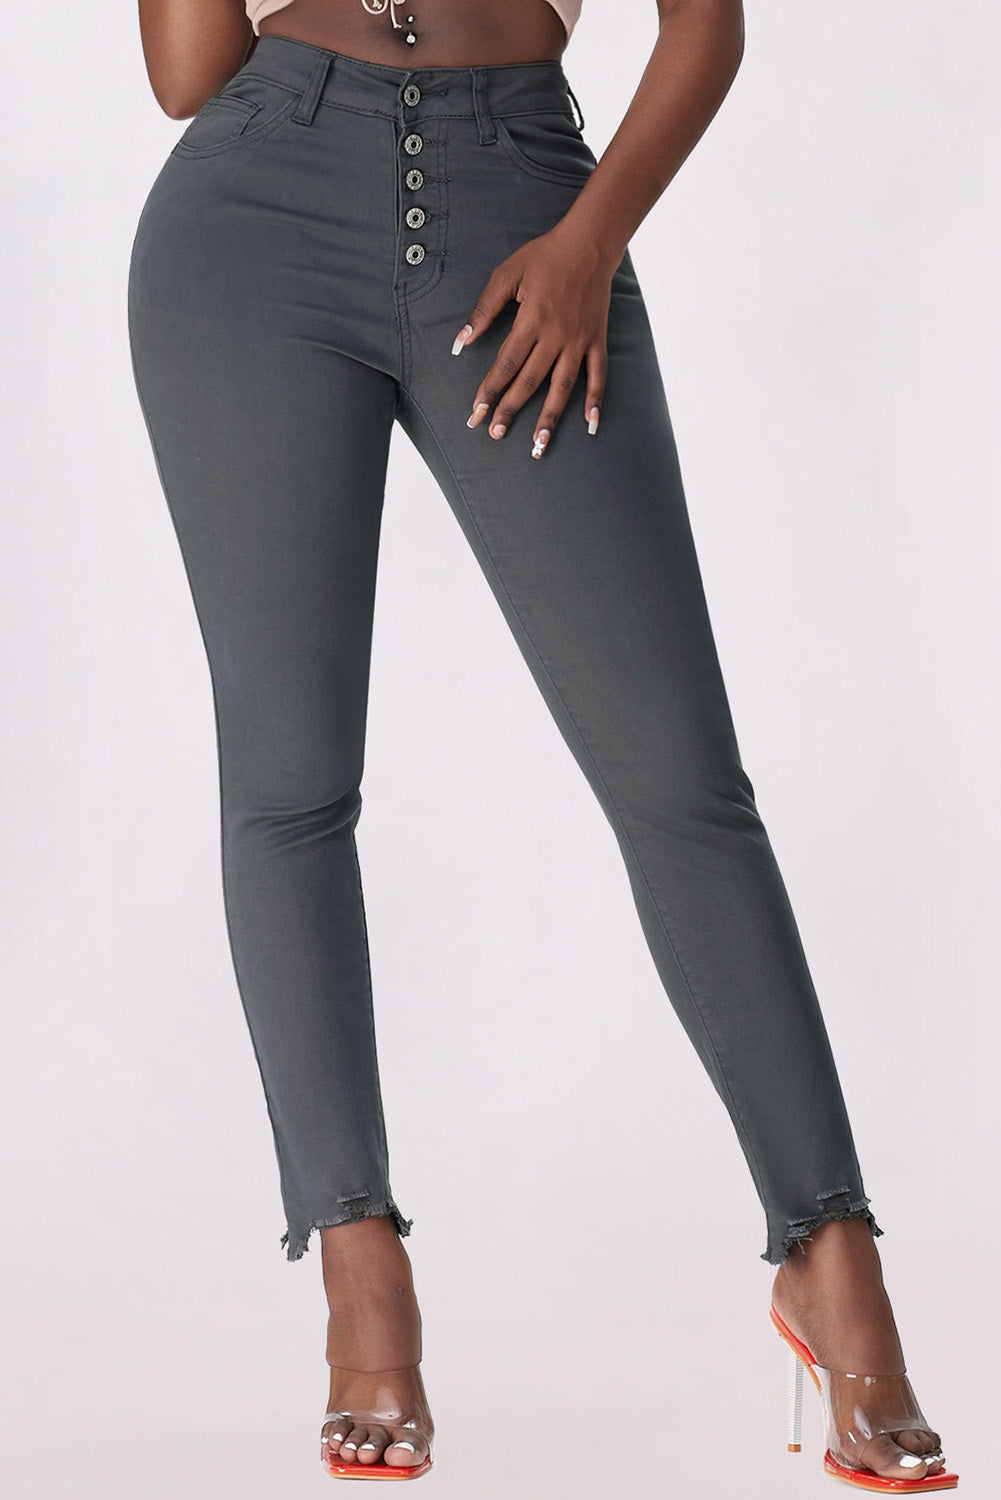 Jeans in denim corto sfilacciati con bottoni a vita alta grigi e semplici